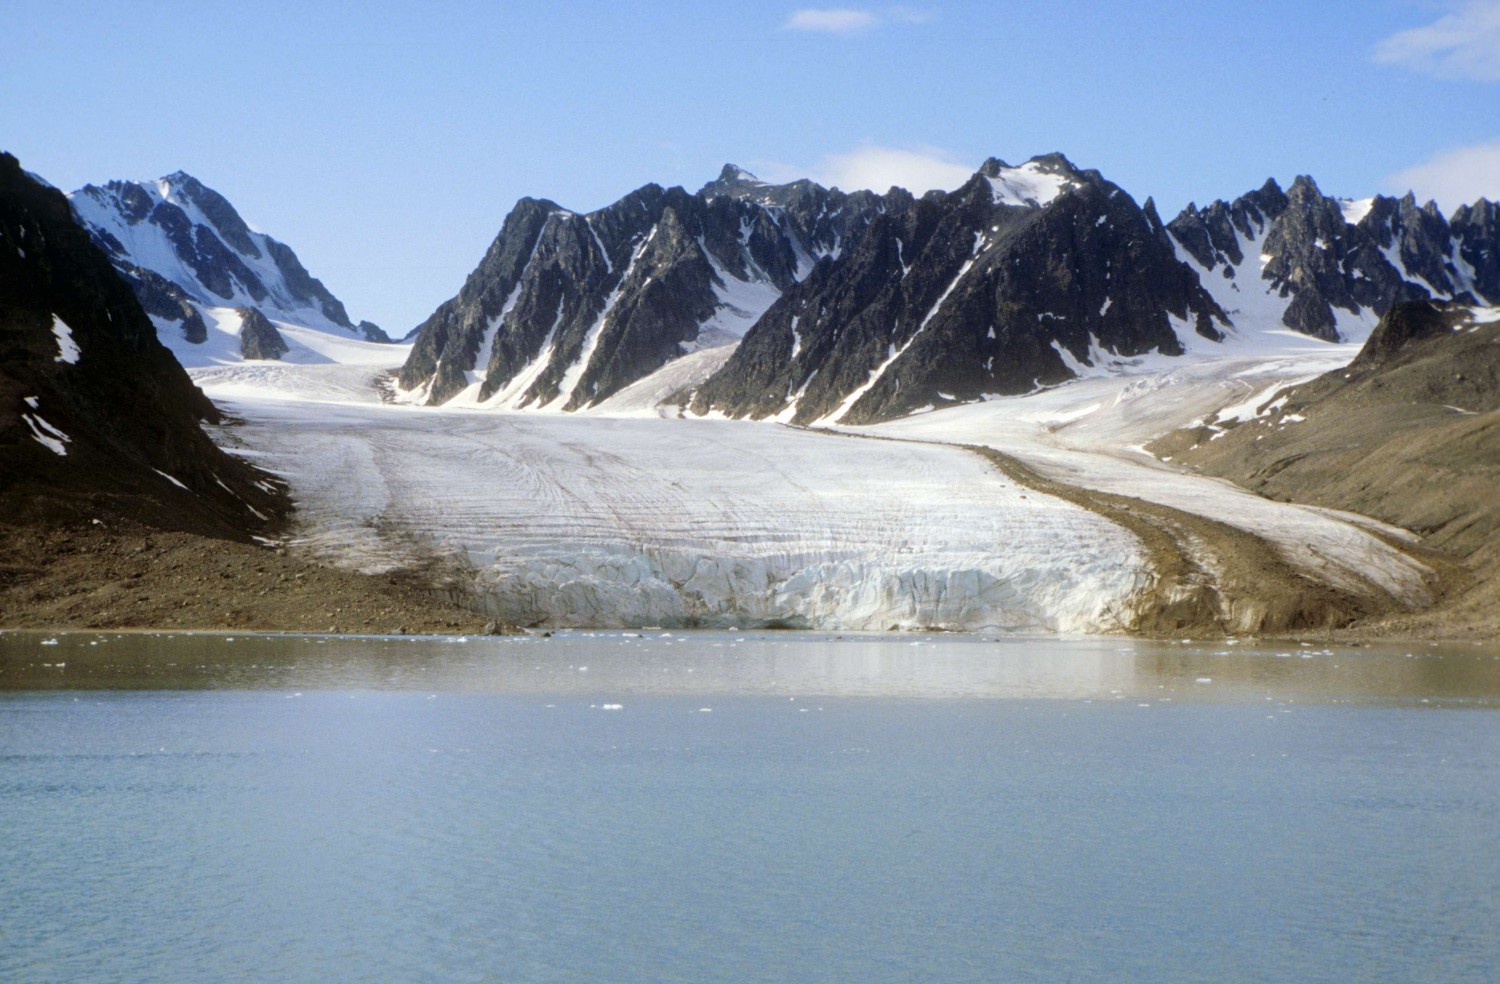 glaciers meet water in the Arctic Ocean